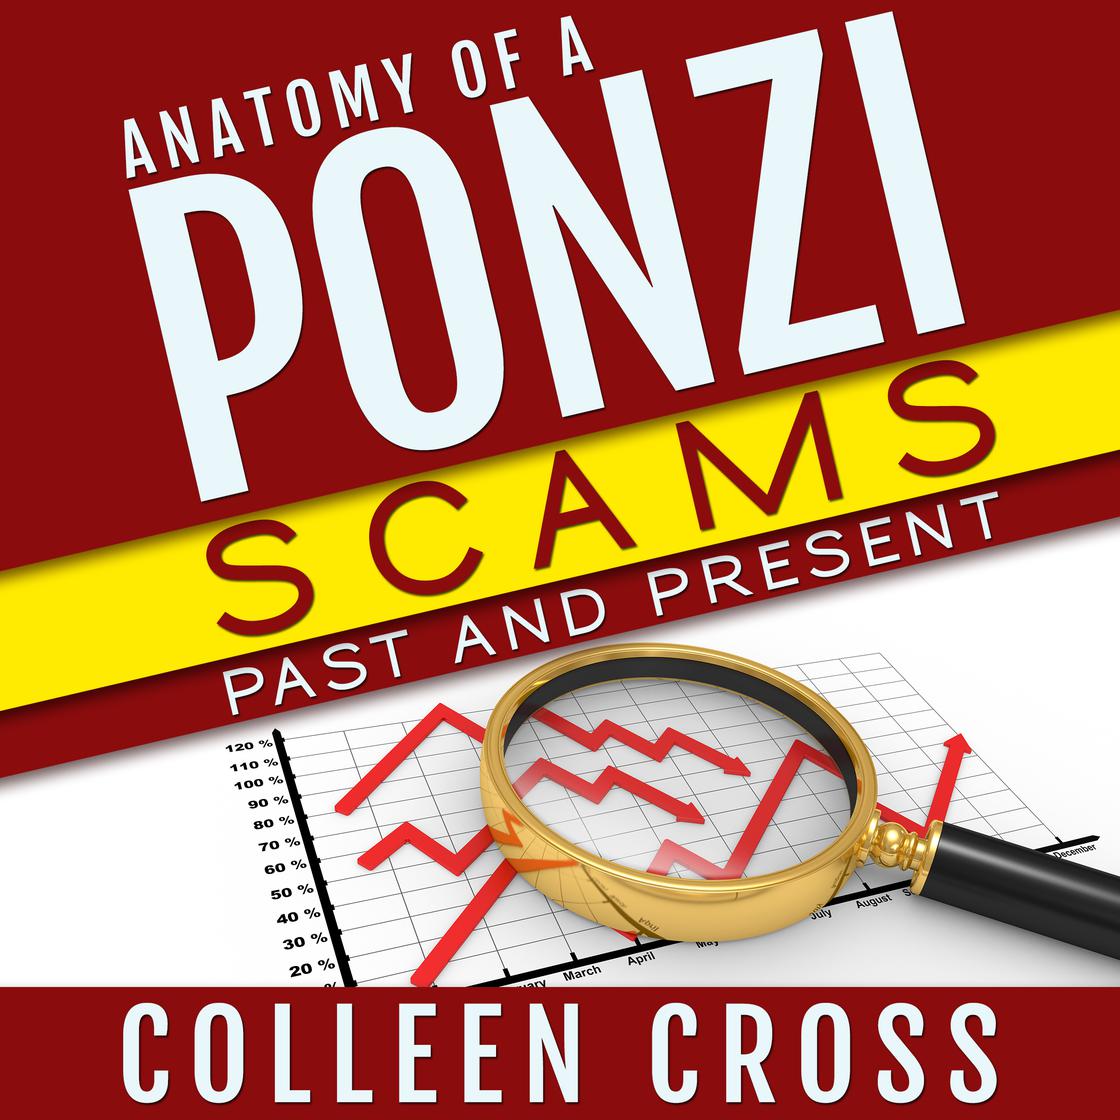 Colleen Cross: Anatomy of a Ponzi (2014, Slice Publishing)